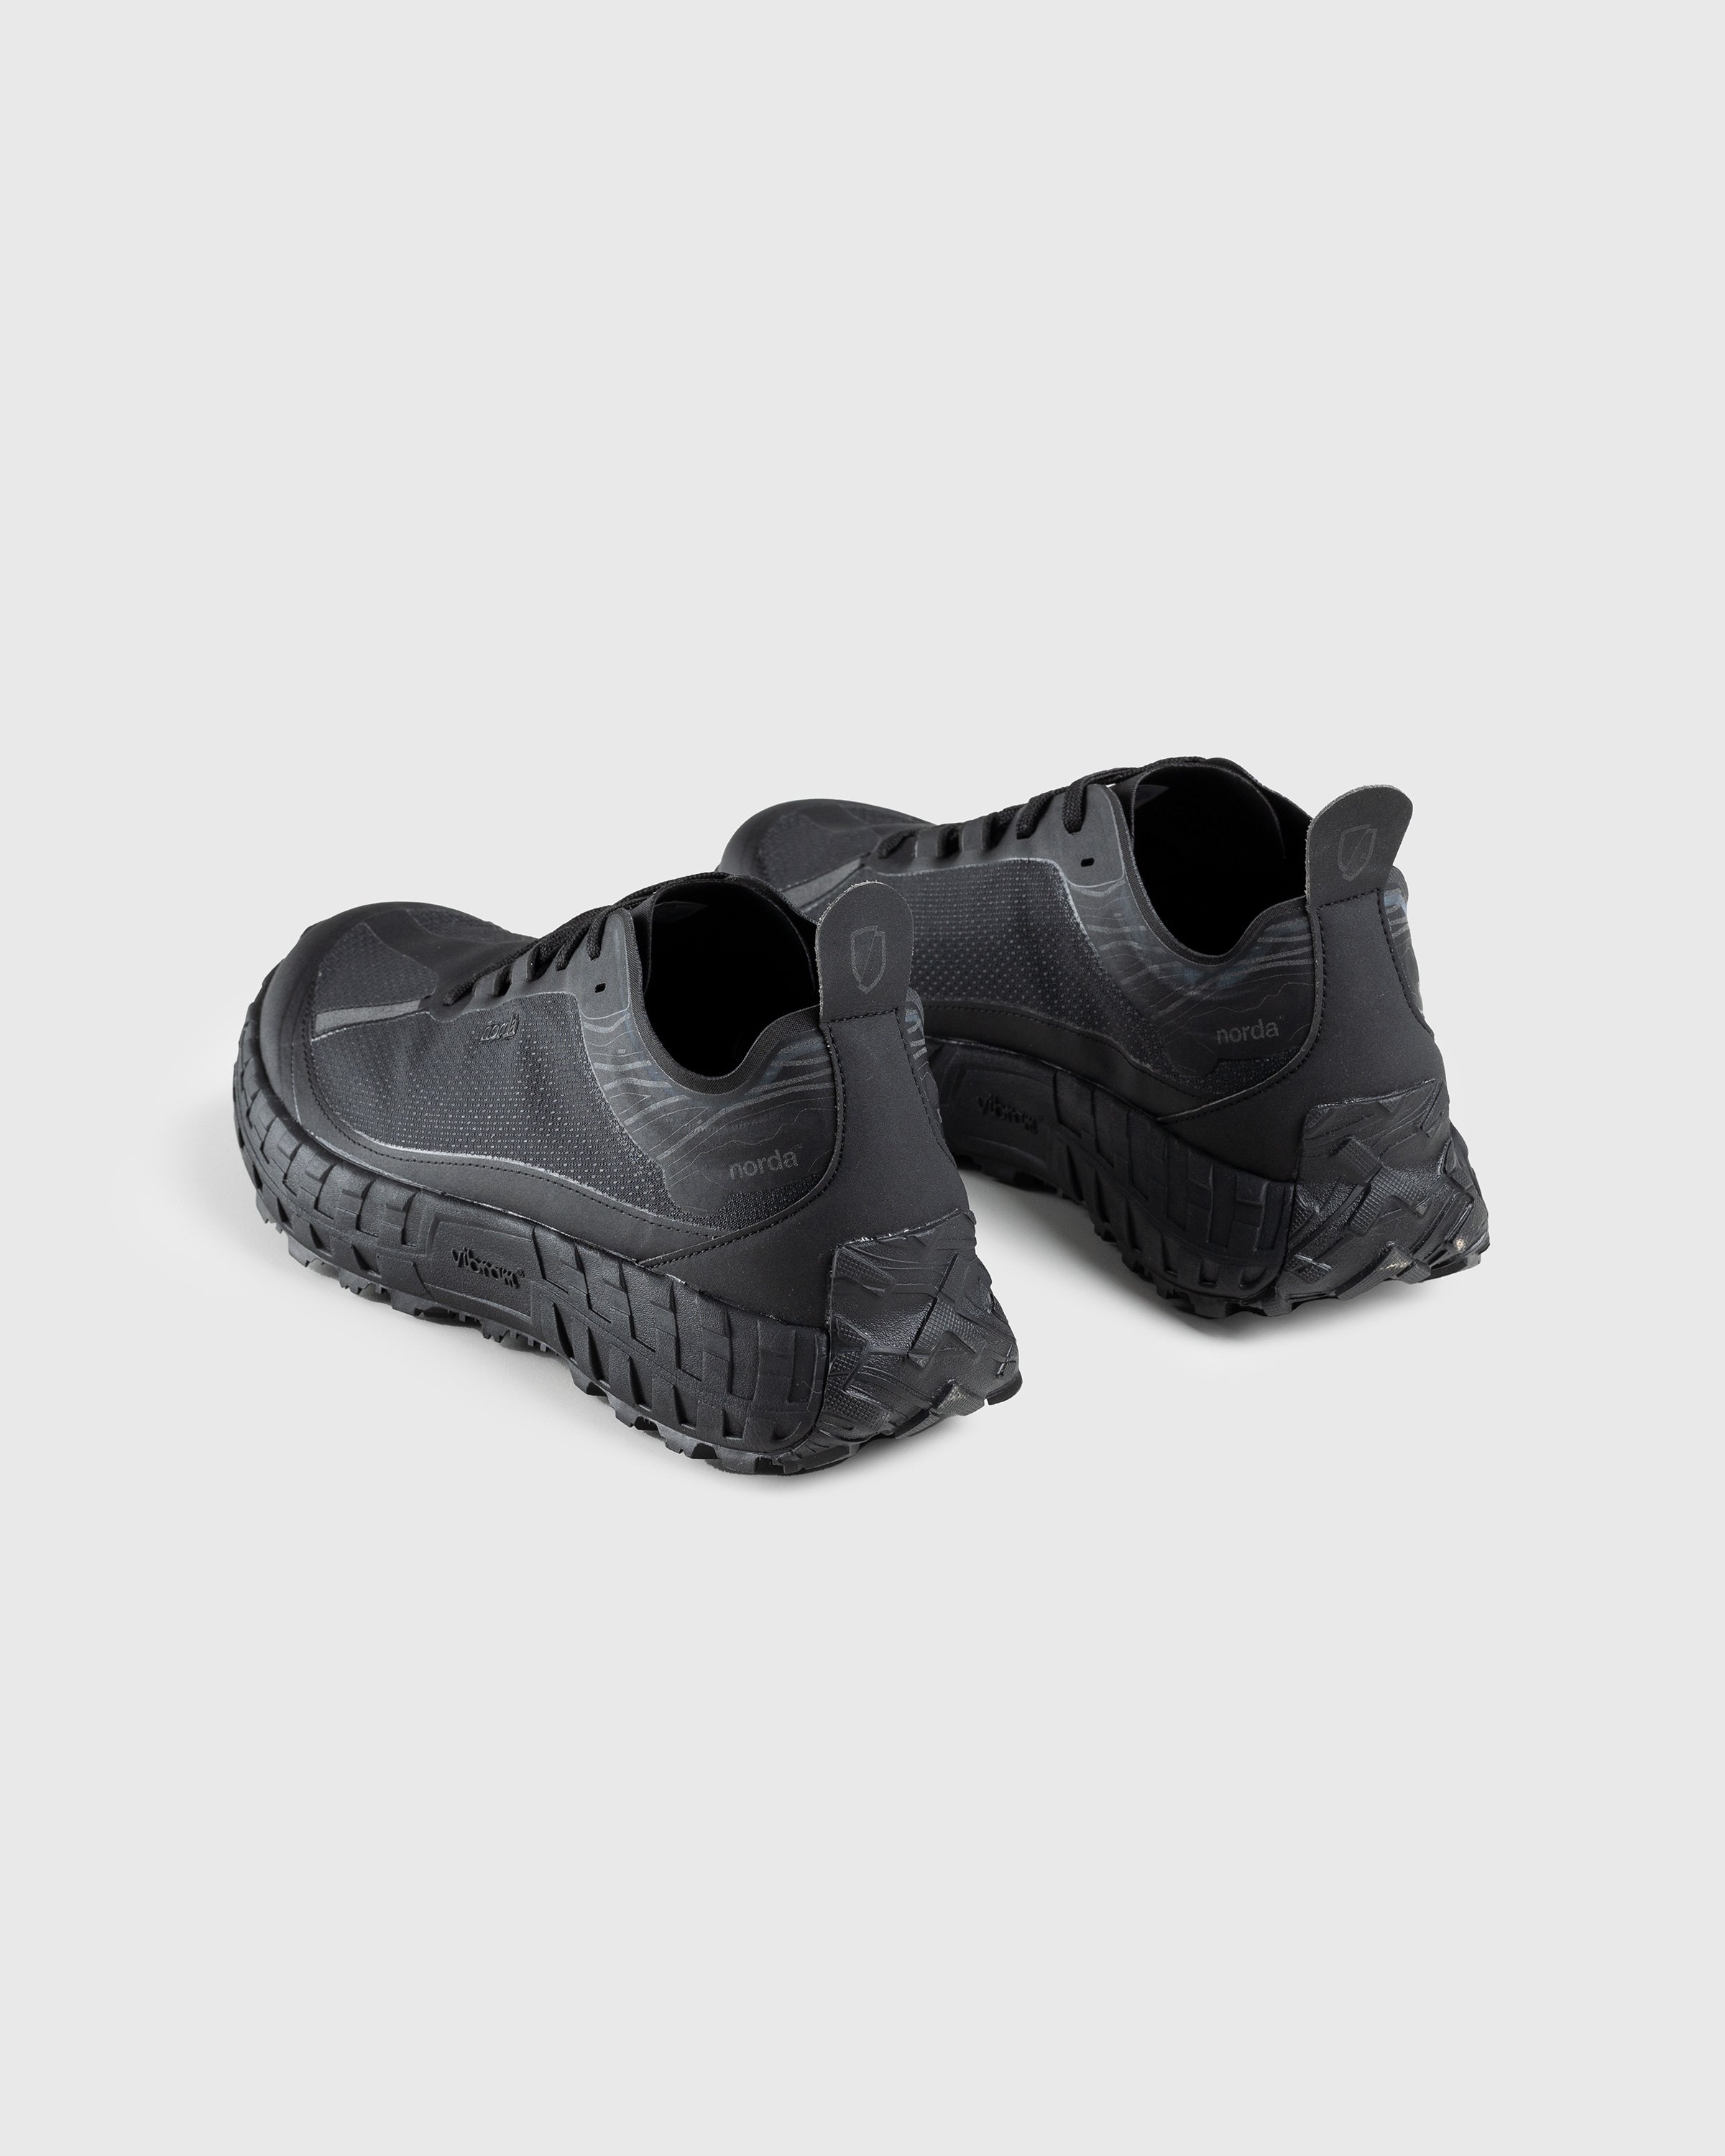 Norda - 001 W Stealth Black - Footwear - Black - Image 4